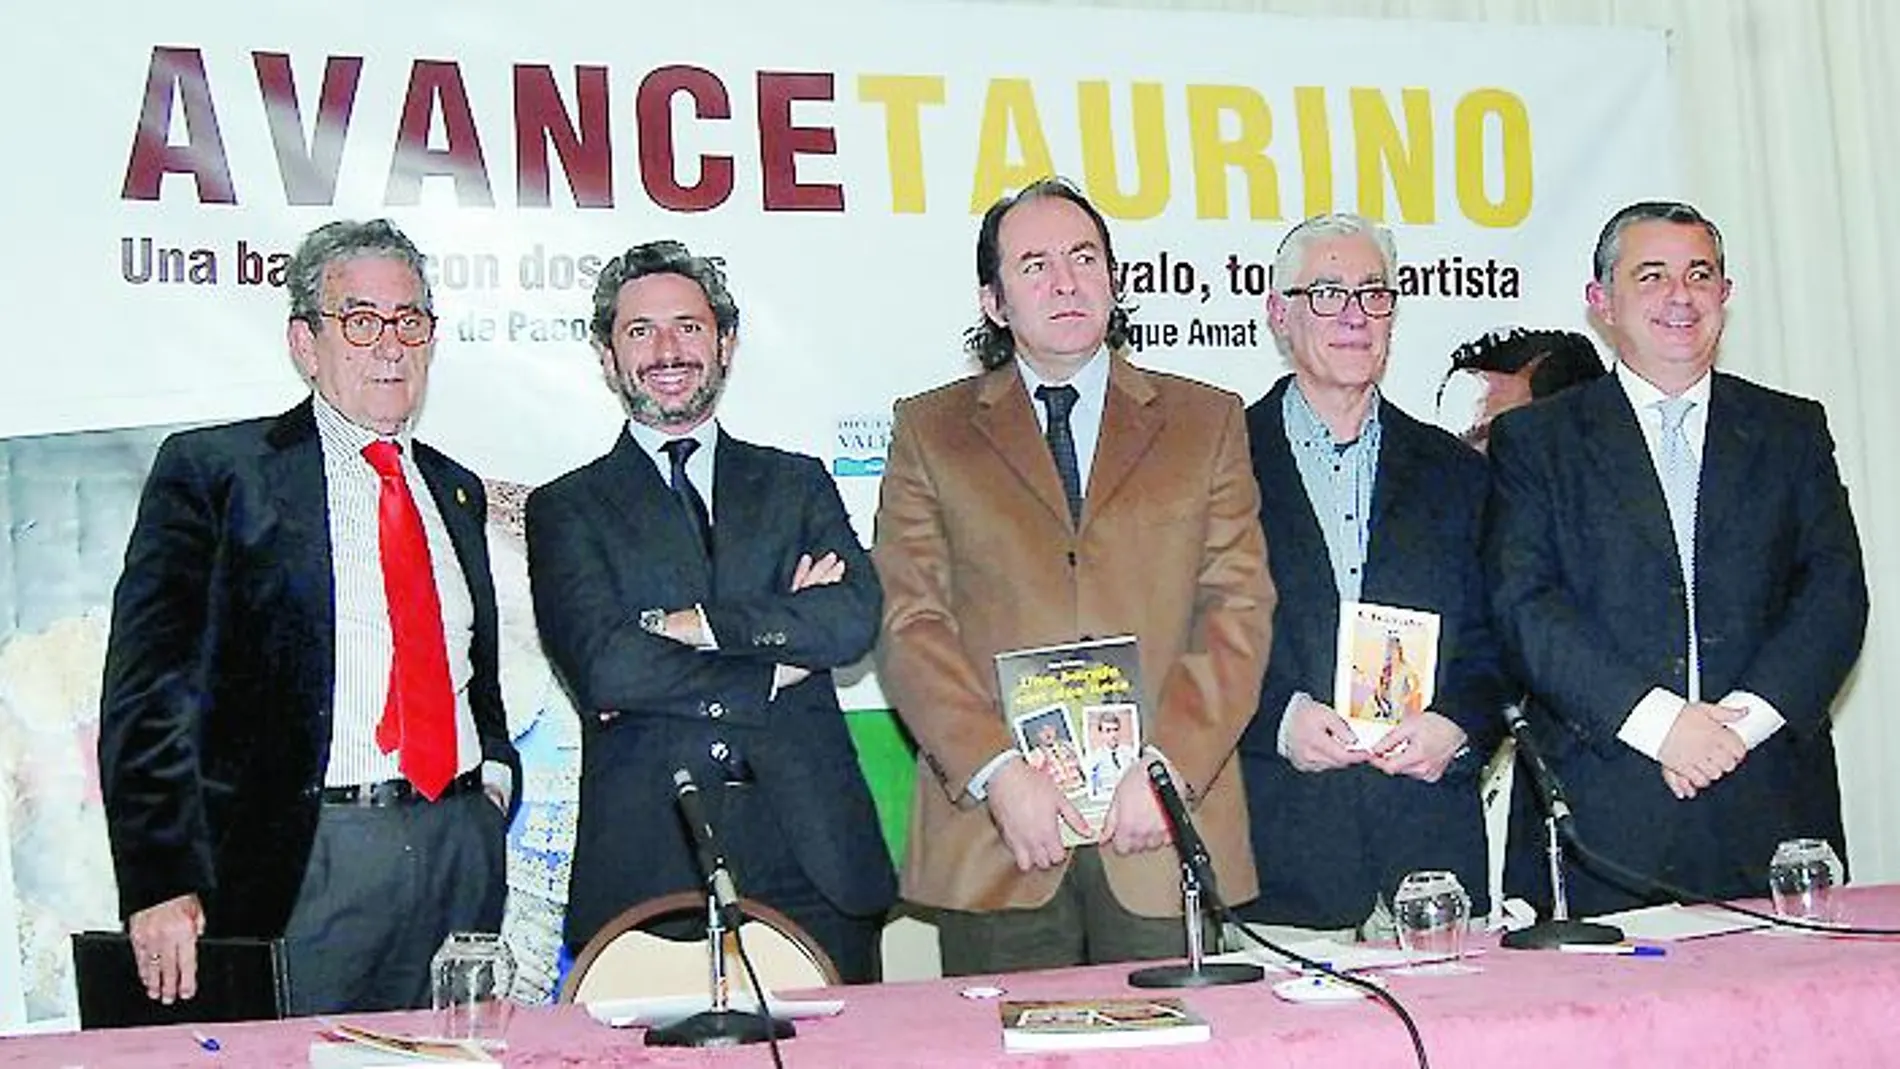 Ricardo Triviño, Isidro Prieto, Paco Delgado, Guillermo Císcar «Chavalo» y Enrique Amat durante la presentación